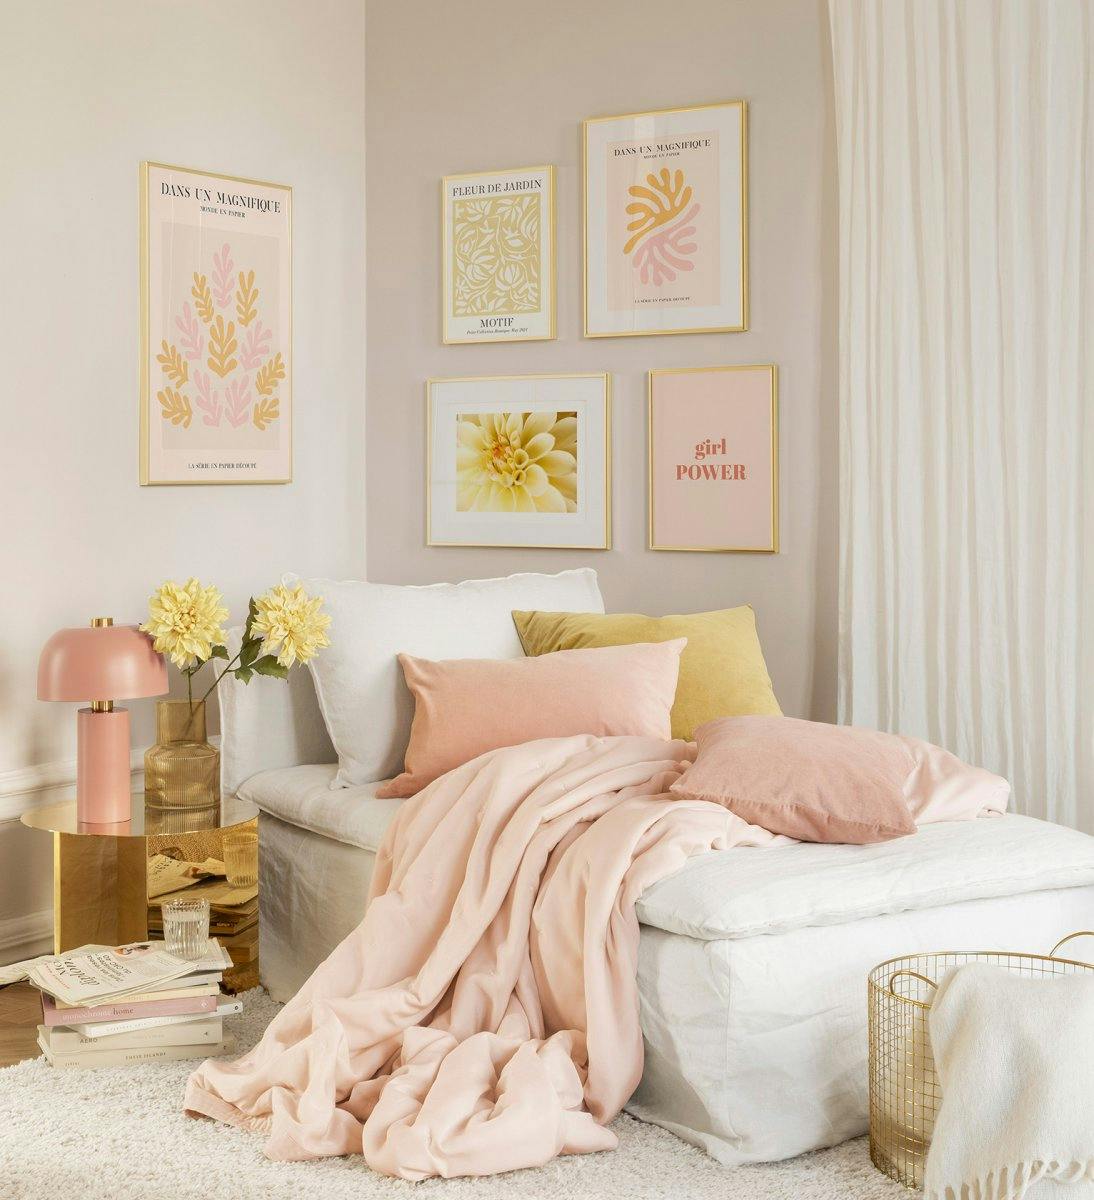 Modna galeria ścienna z różowymi i pomarańczowymi obrazami w złotych ramkach do sypialni